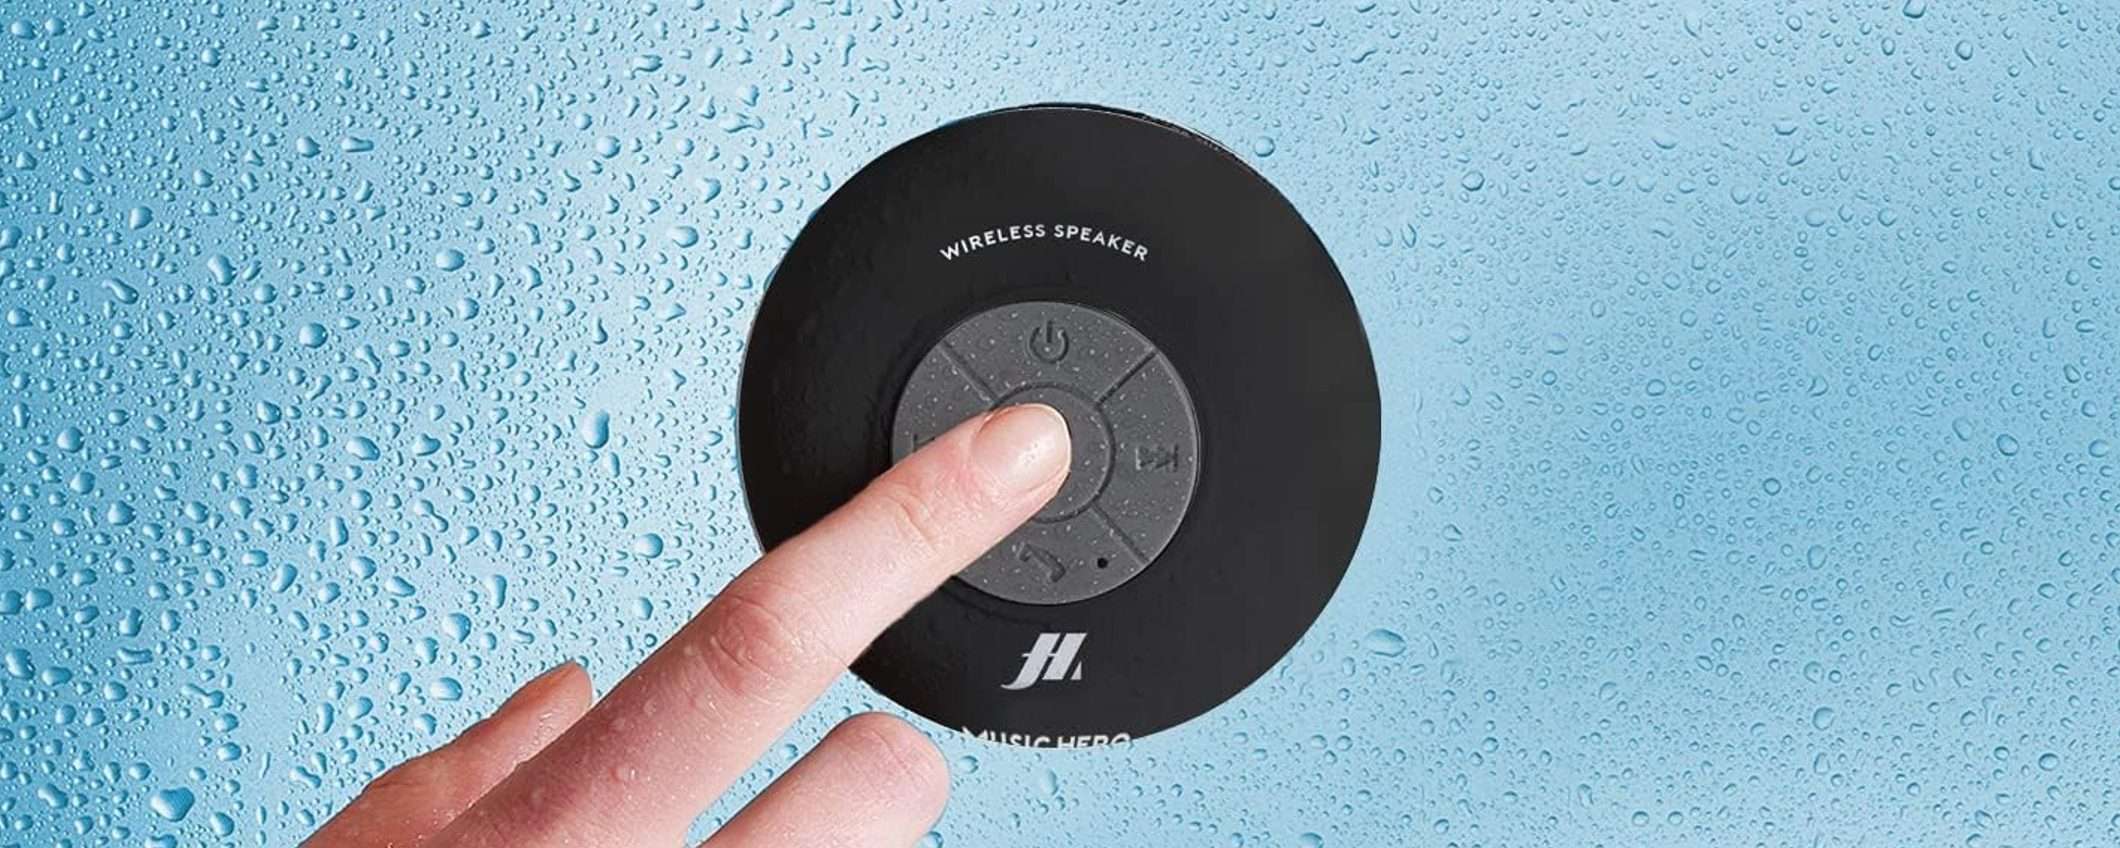 Cassa Bluetooth impermeabile a 15€: puoi usarla anche in doccia